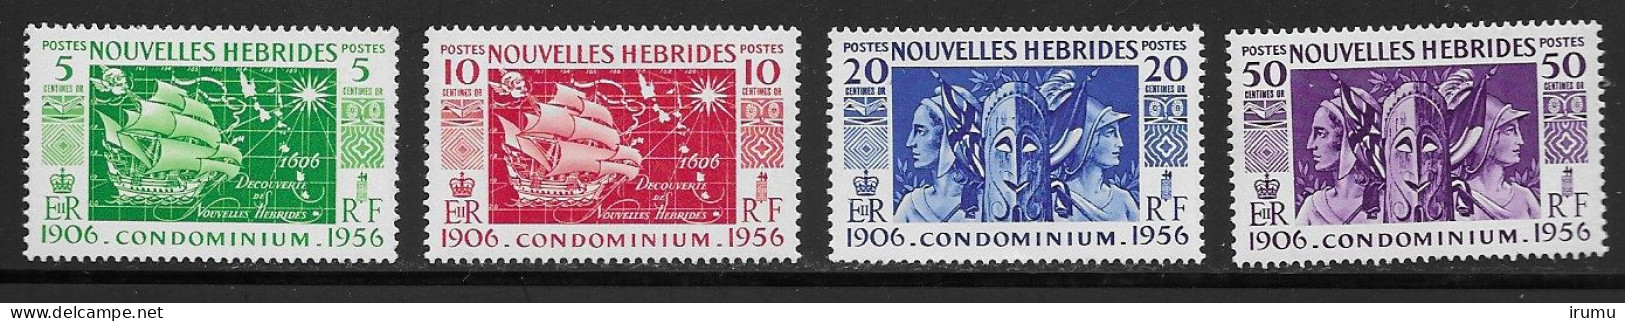 Nlle Hébrides 1956 Série Complète * (Y&T 167-170) Vc 8.5 EUR (SN 2103) - Ungebraucht